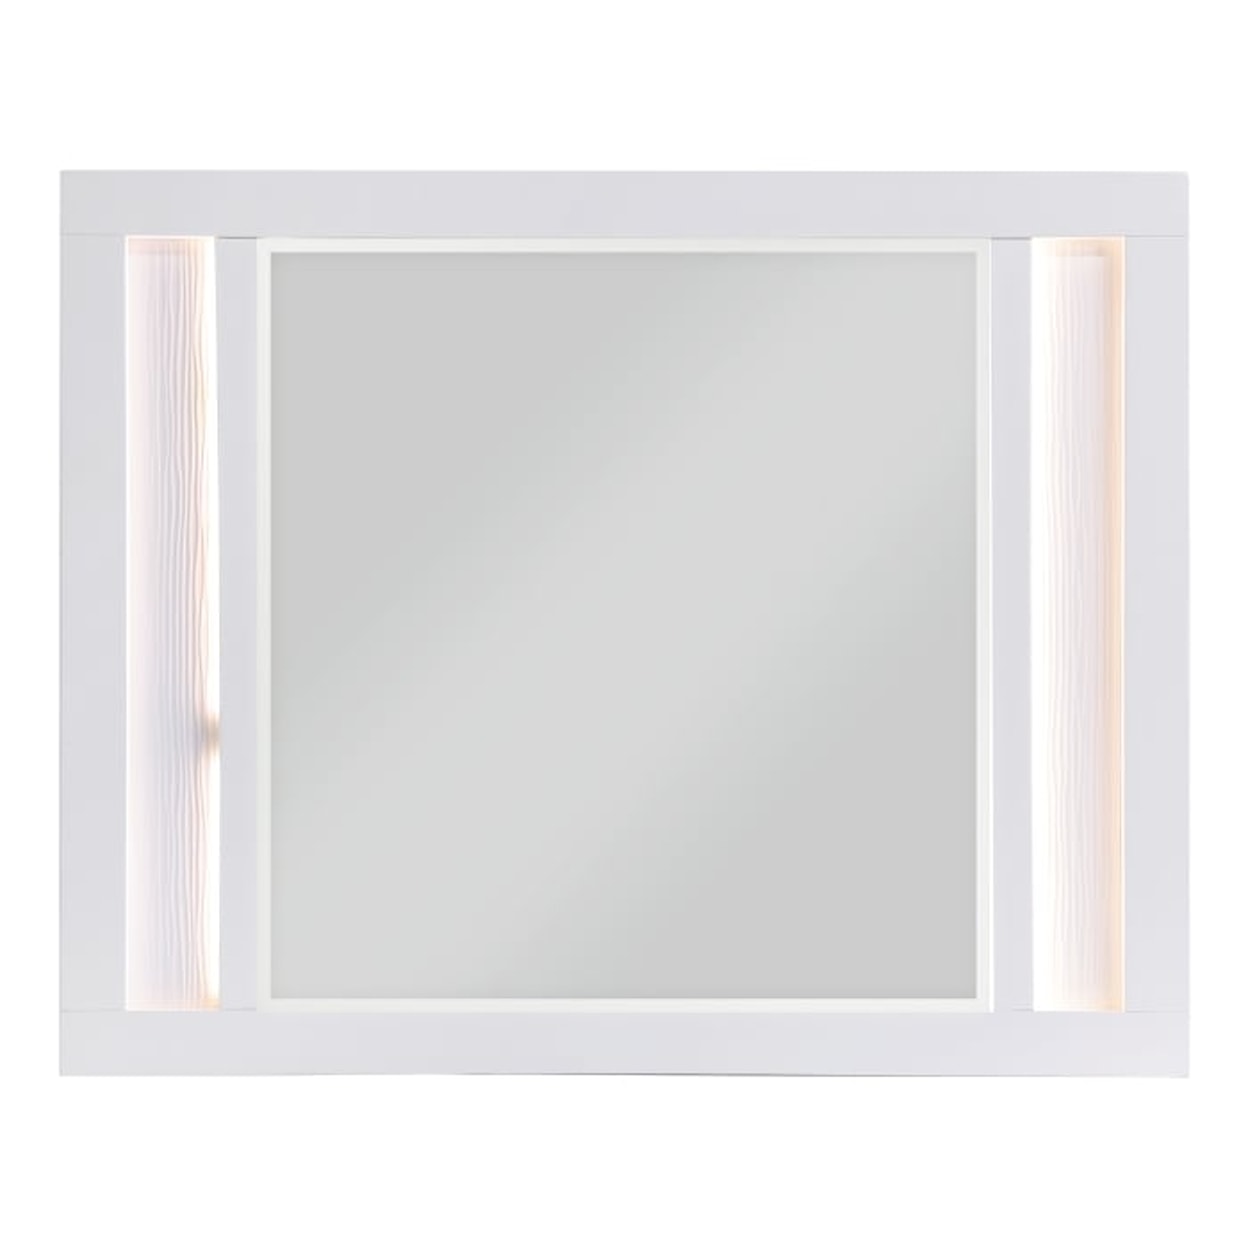 Homelegance Prism Dresser Mirror